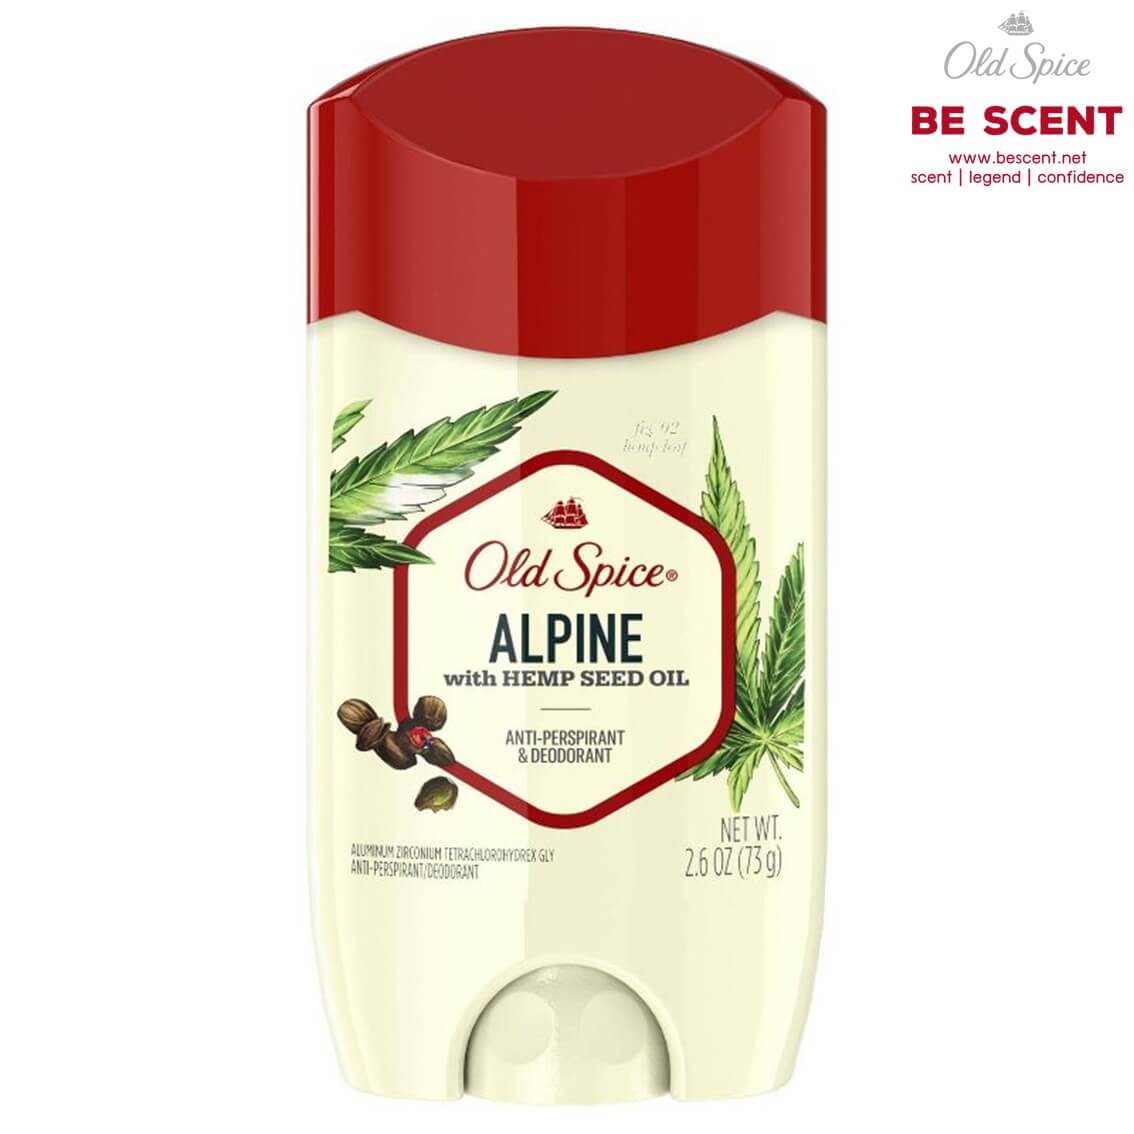 Old Spice กลิ่น Alpine สูตรเต่าเปียก โรลออนดับกลิ่นเต่า ขนาด 73 กรัม